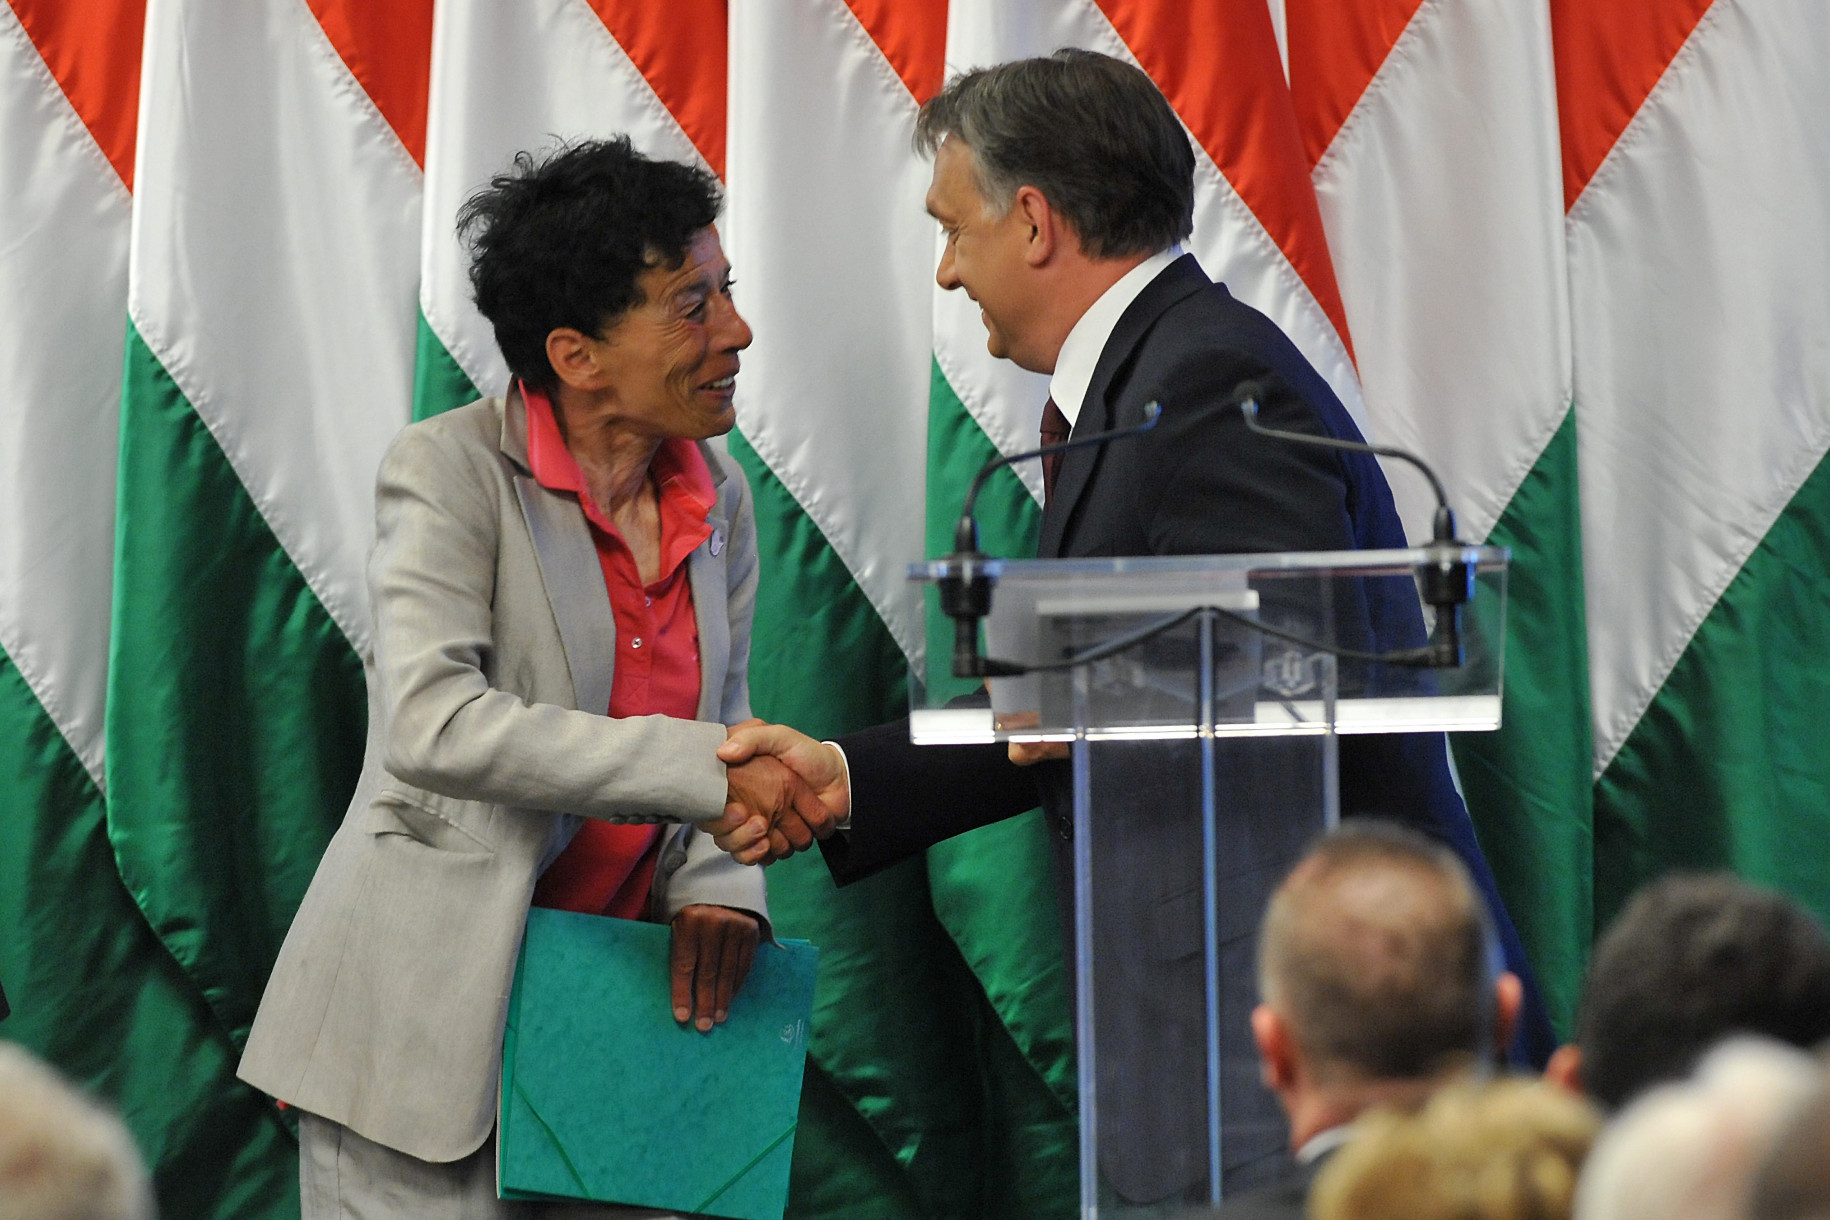 La consigliera lascia Orban: "Ha fatto un discorso nazista degno di Goebbels"